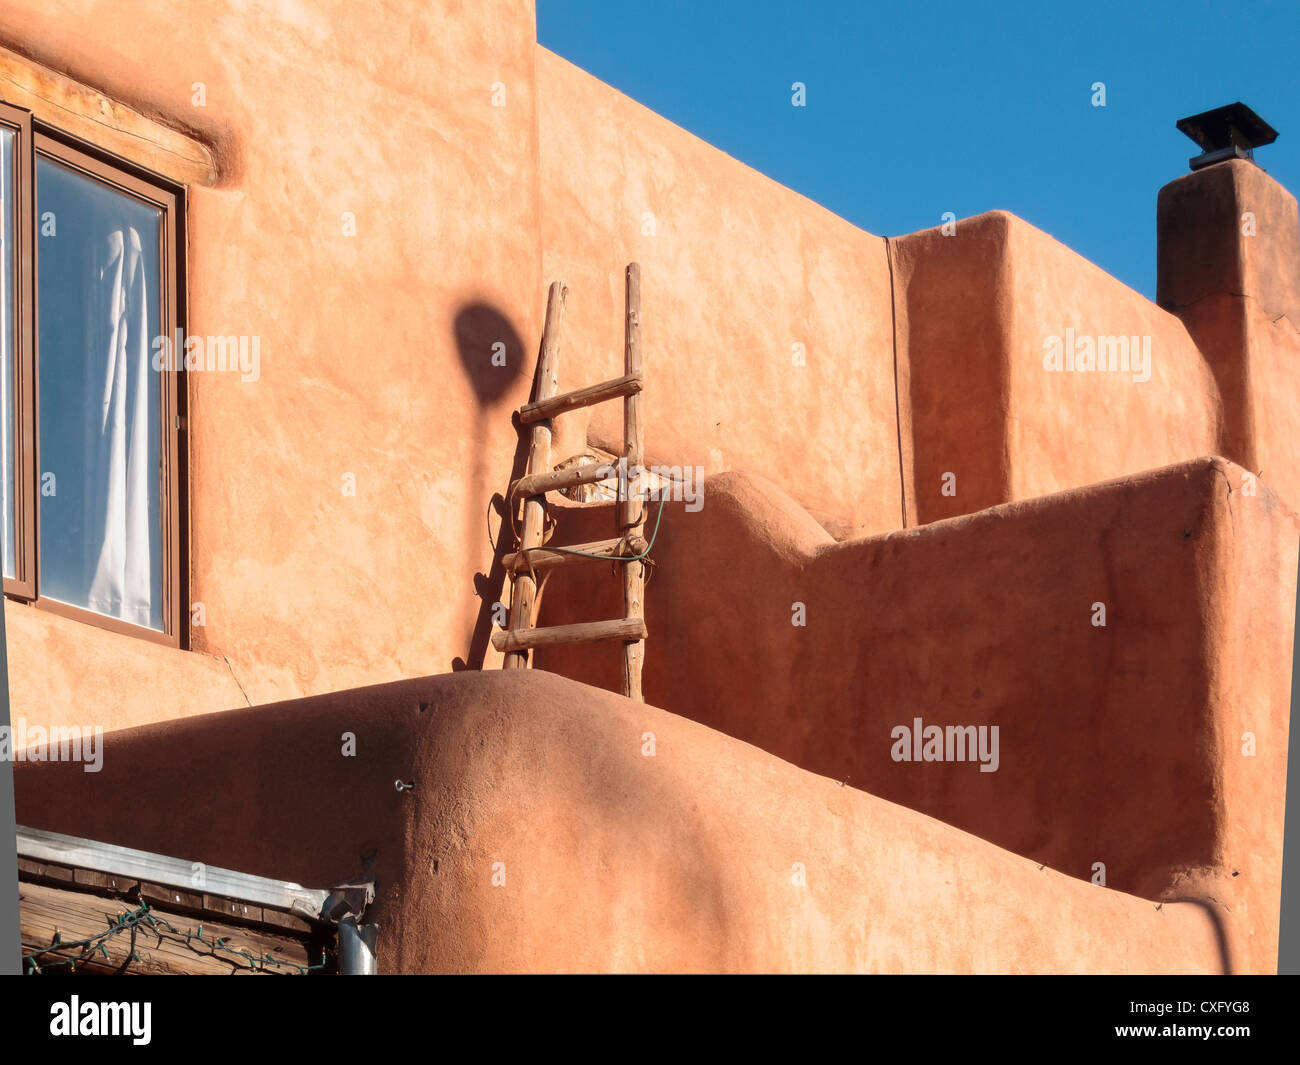 L'Architecture d'Adobe, le centre-ville de Santa Fe, Nouveau Mexique Banque D'Images